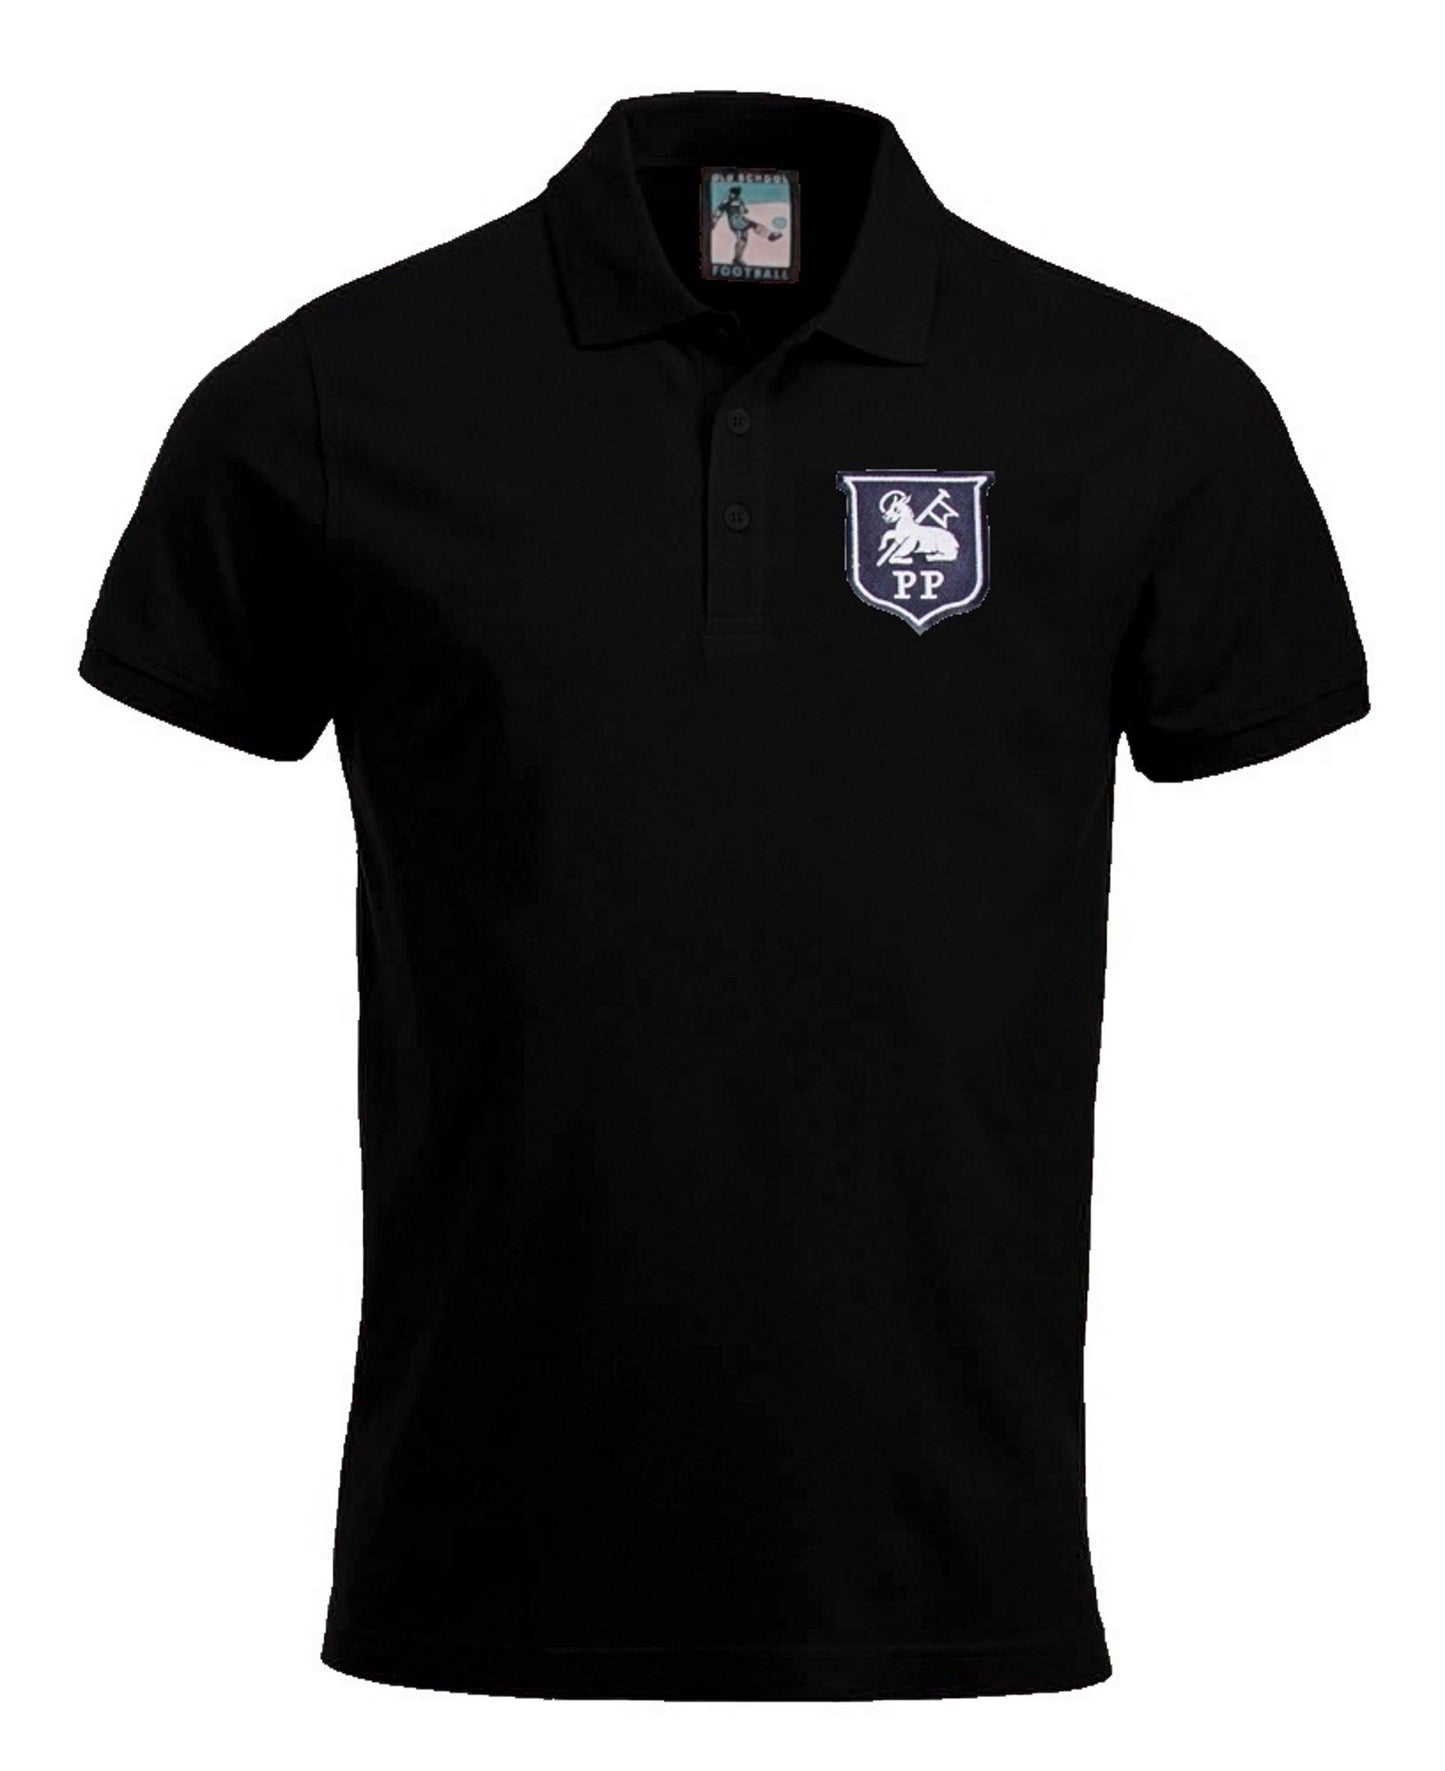 Preston North End Retro 1940 - 1960s Football Polo Shirt - Polo